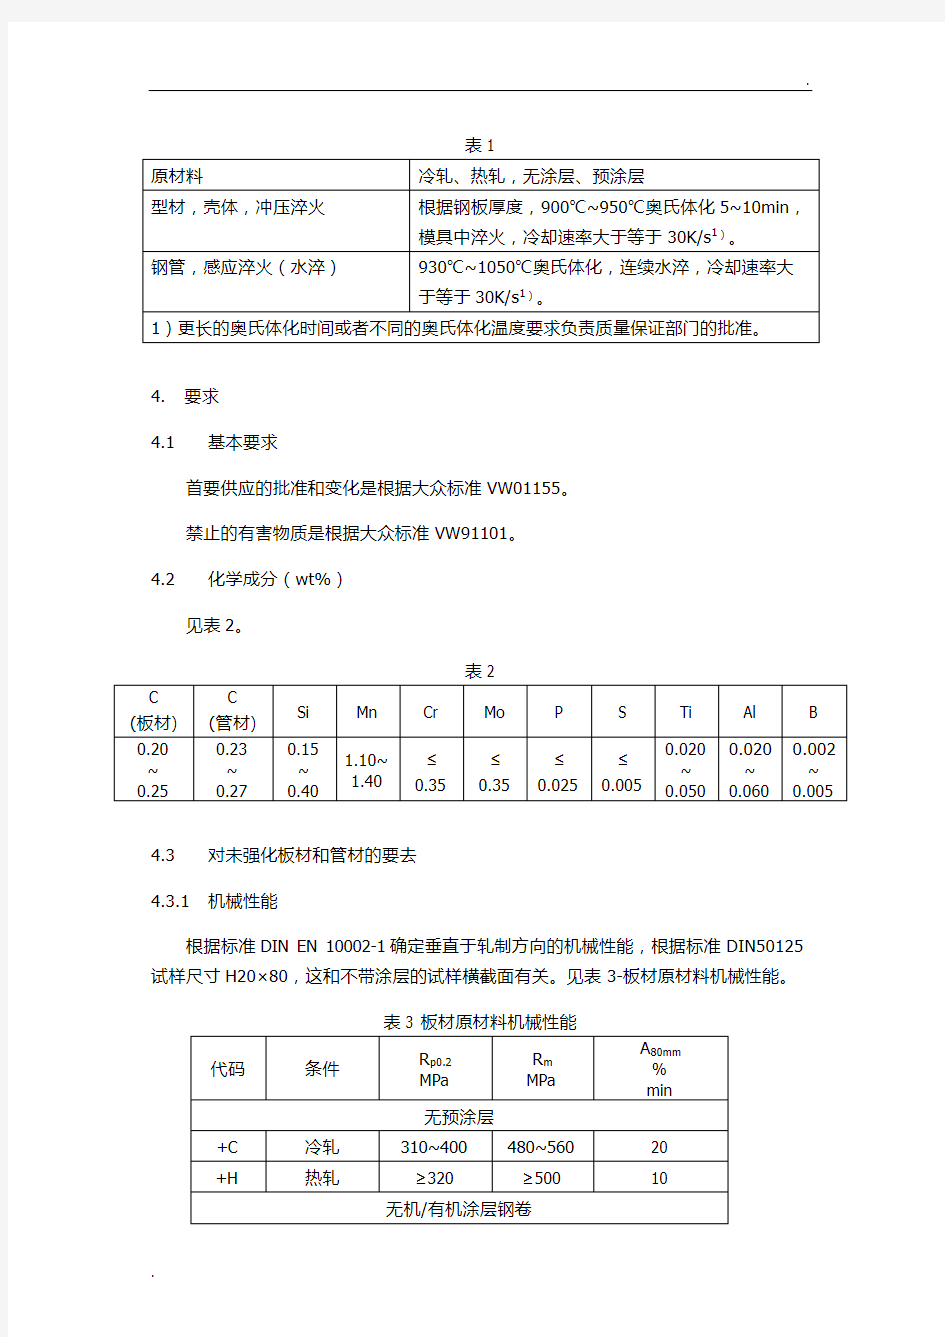 大众热成型标准中文翻译TL4225_EN